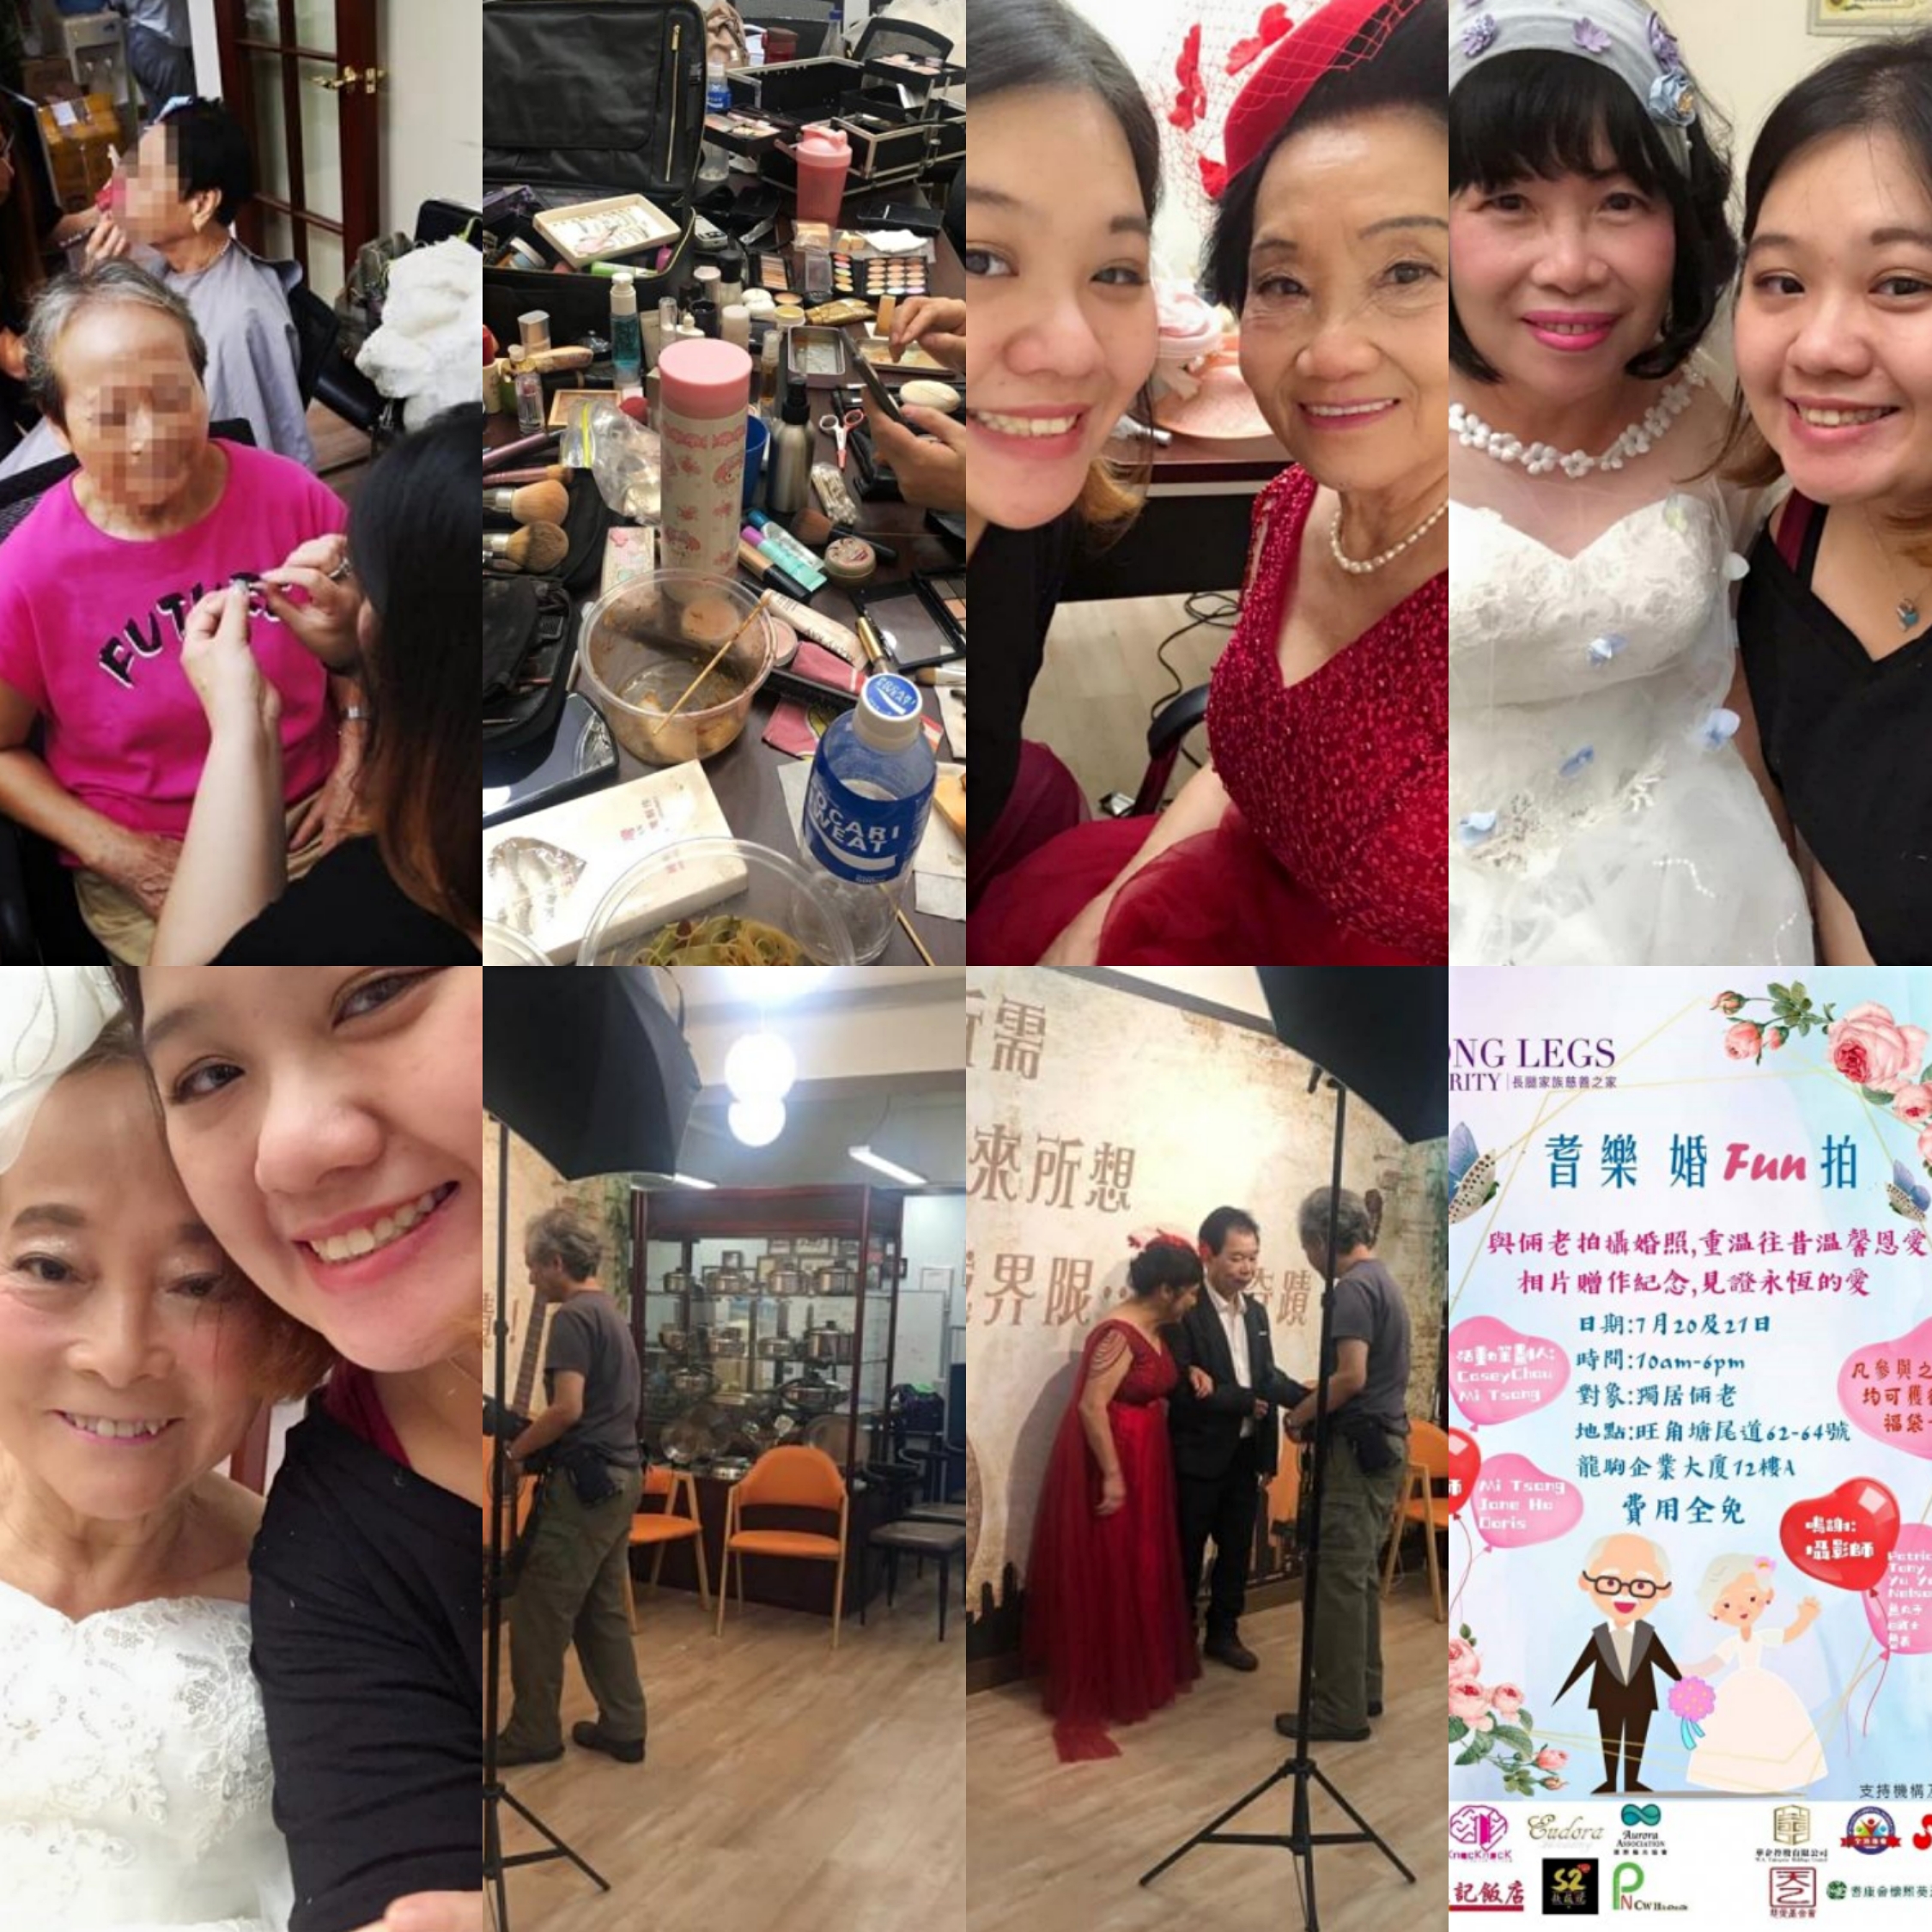 Mi tsang 化妝師專欄文章: 慈善活動～老人家婚紗照化妝